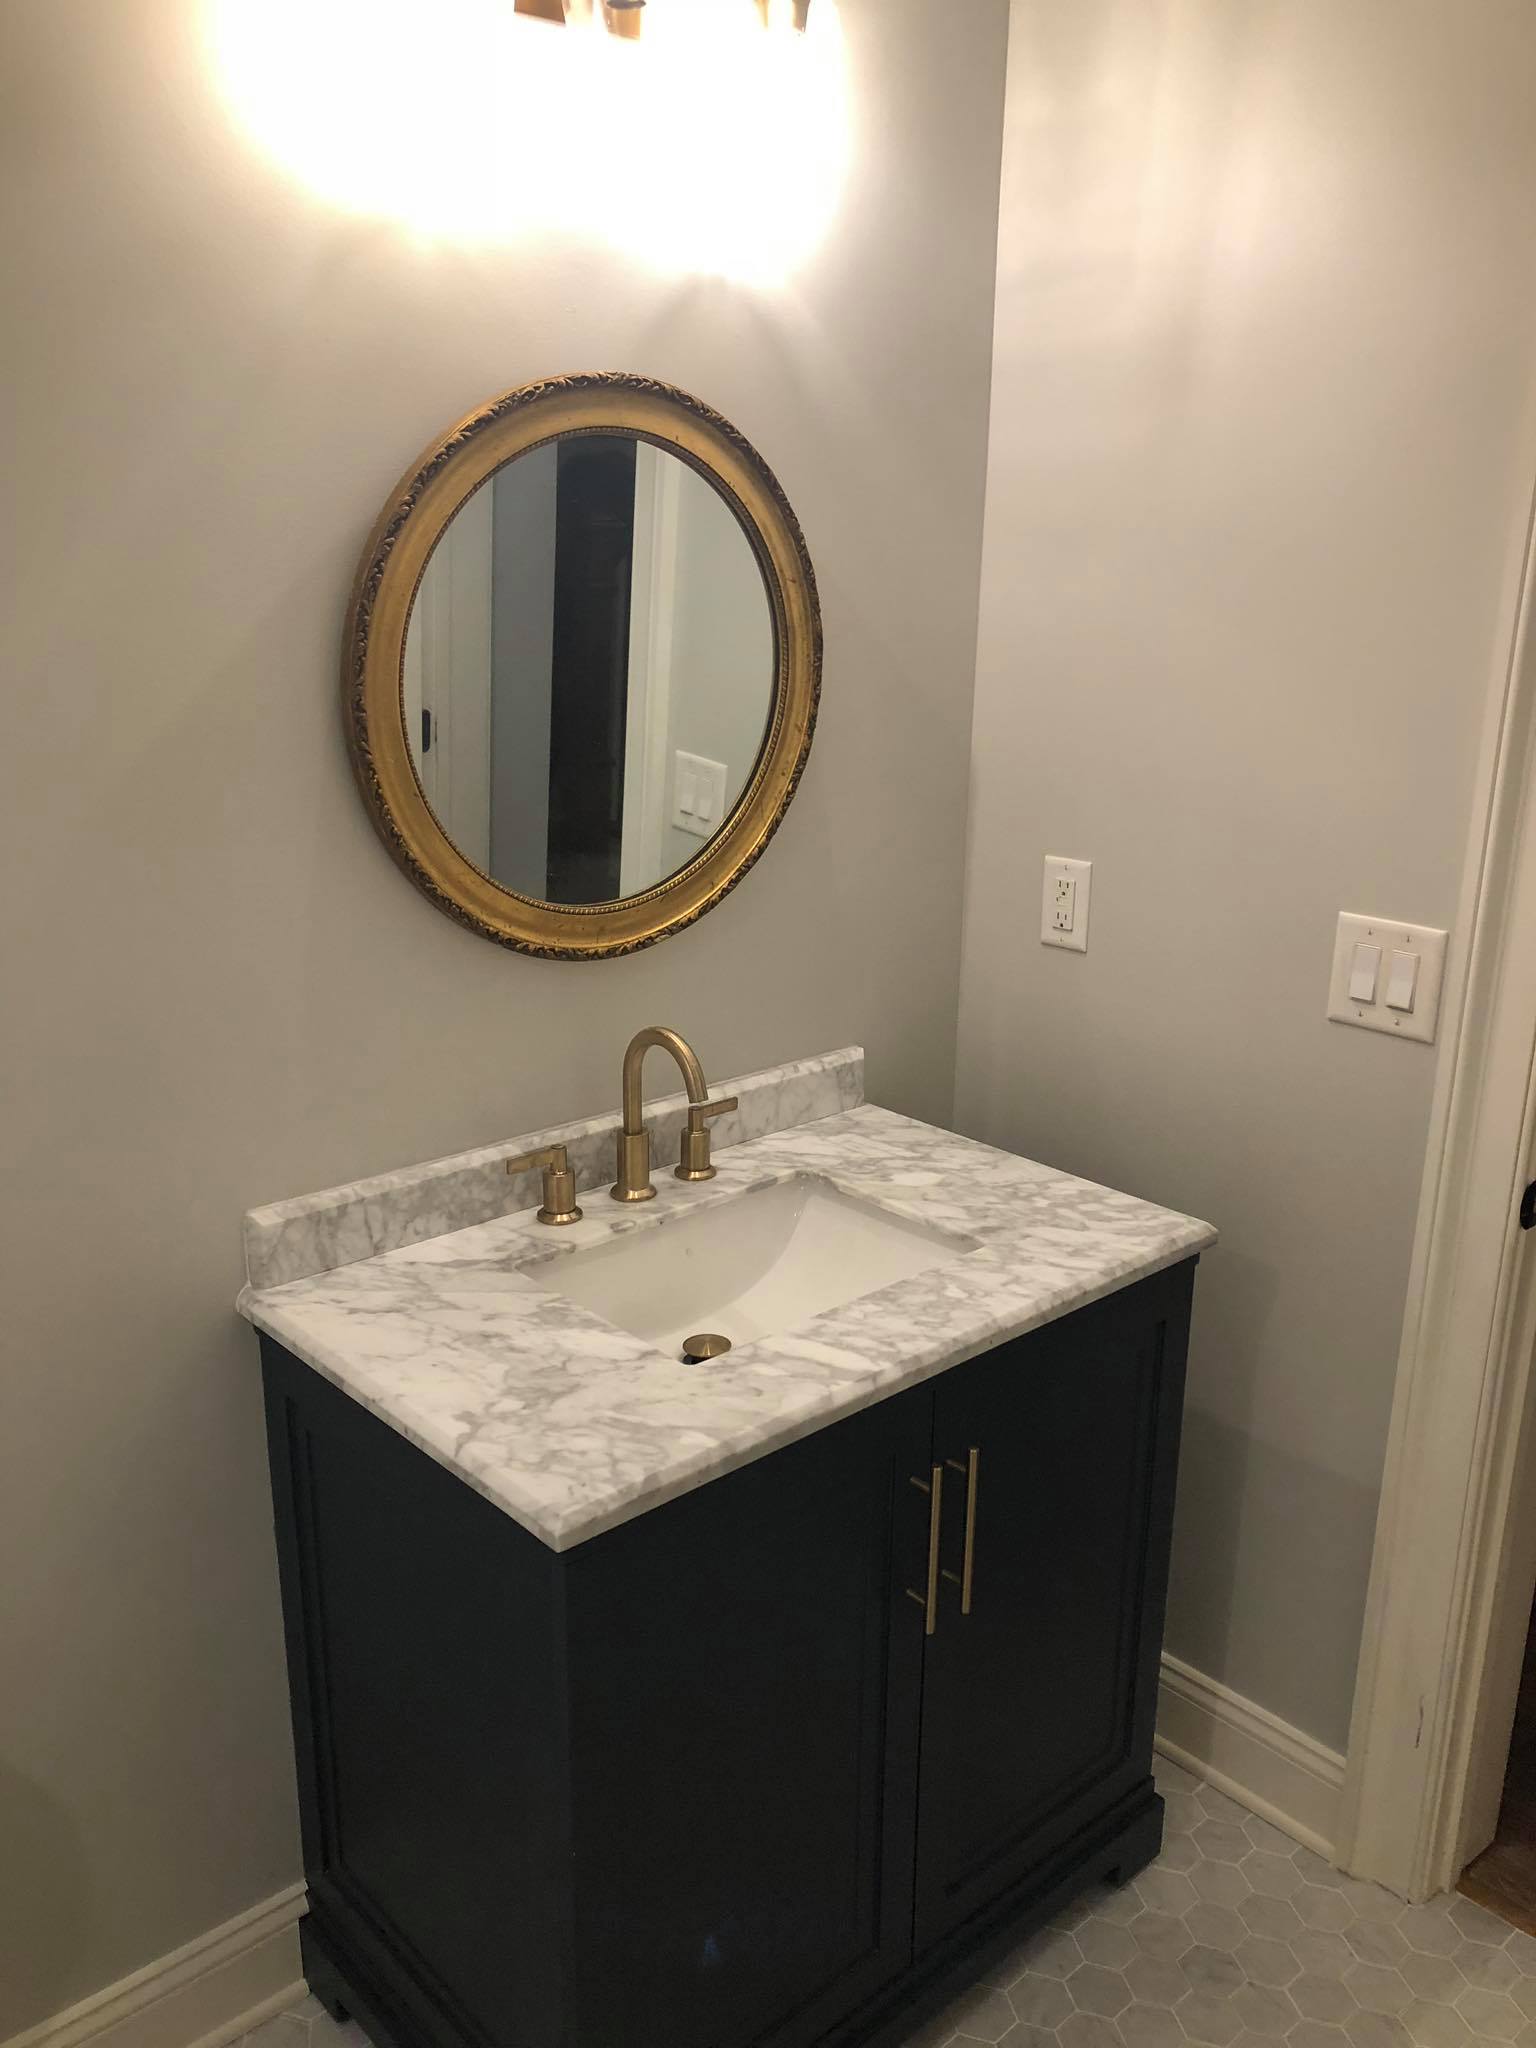 Bathroom Remodel with New Tiles and Double Door Vanity 3